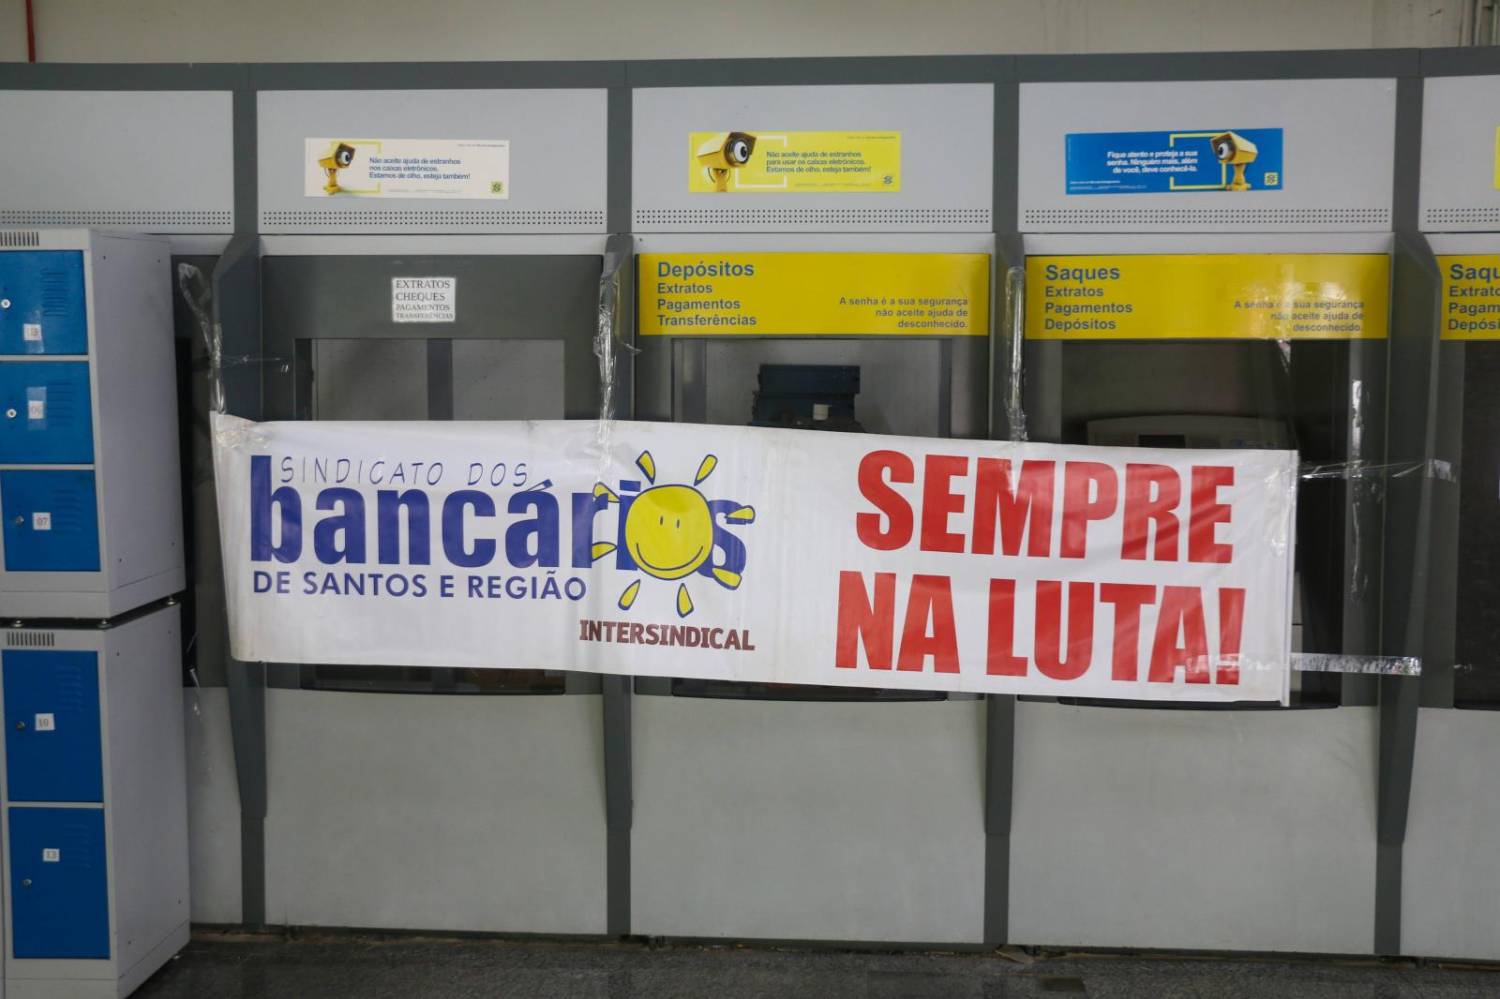 Banco do Brasil é condenado por exposição em ranking de desempenho